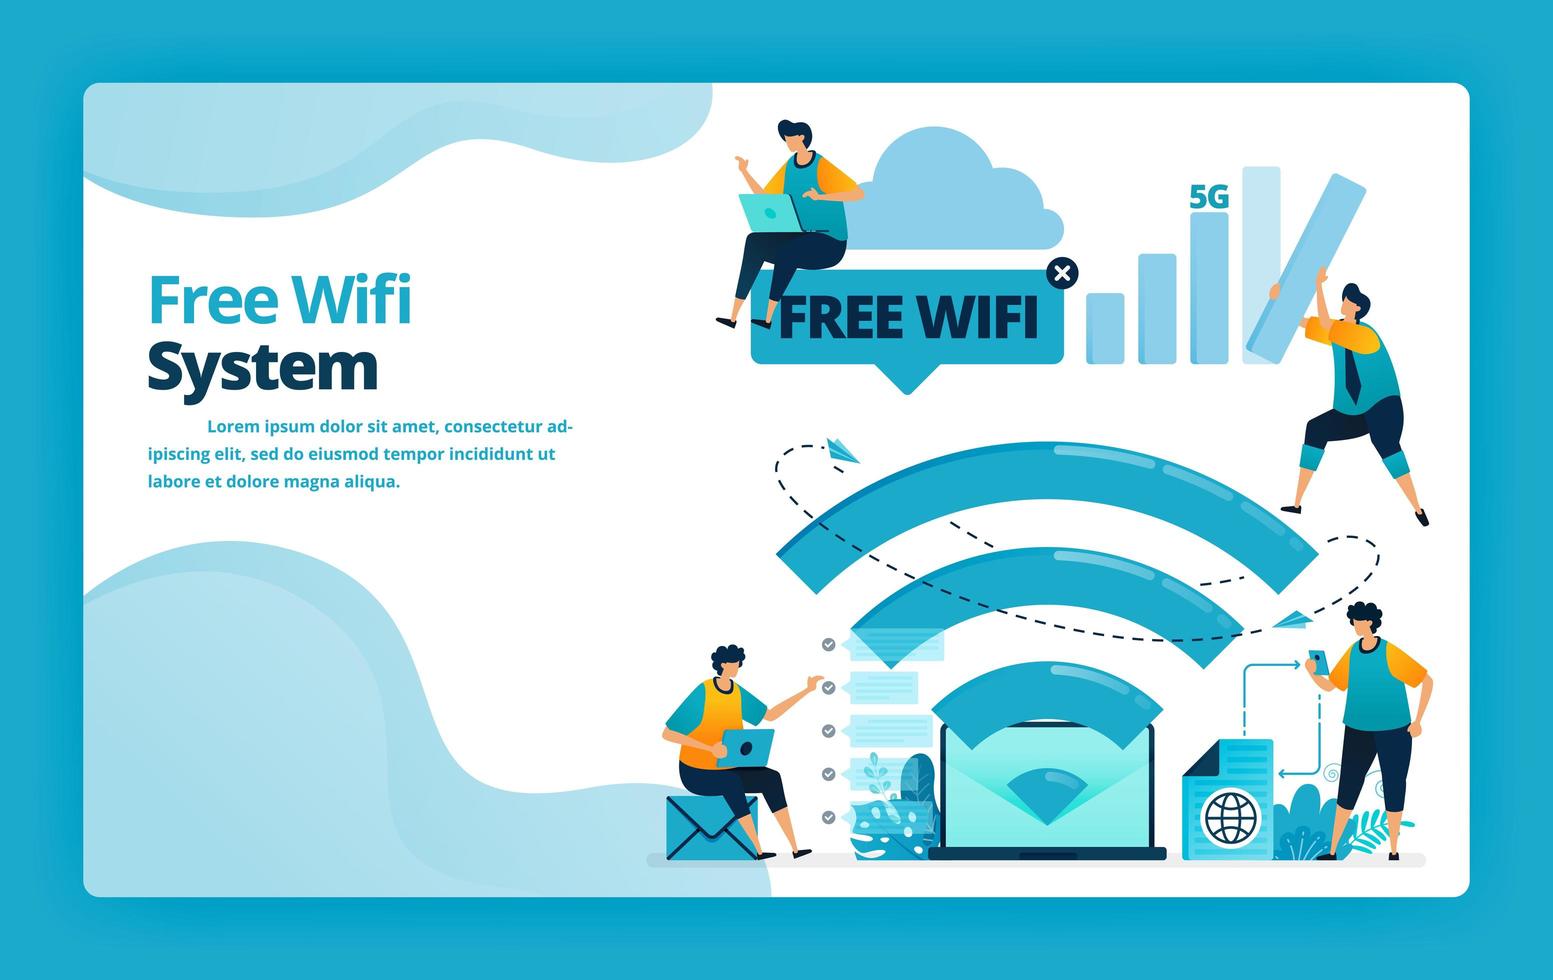 vectorillustratie van bestemmingspagina van gratis wifi-systeem voor een goedkopere en efficiëntere internetverbinding. ontwerp voor website, web, banner, mobiele apps, poster, brochure, sjabloon, advertenties, startpagina vector